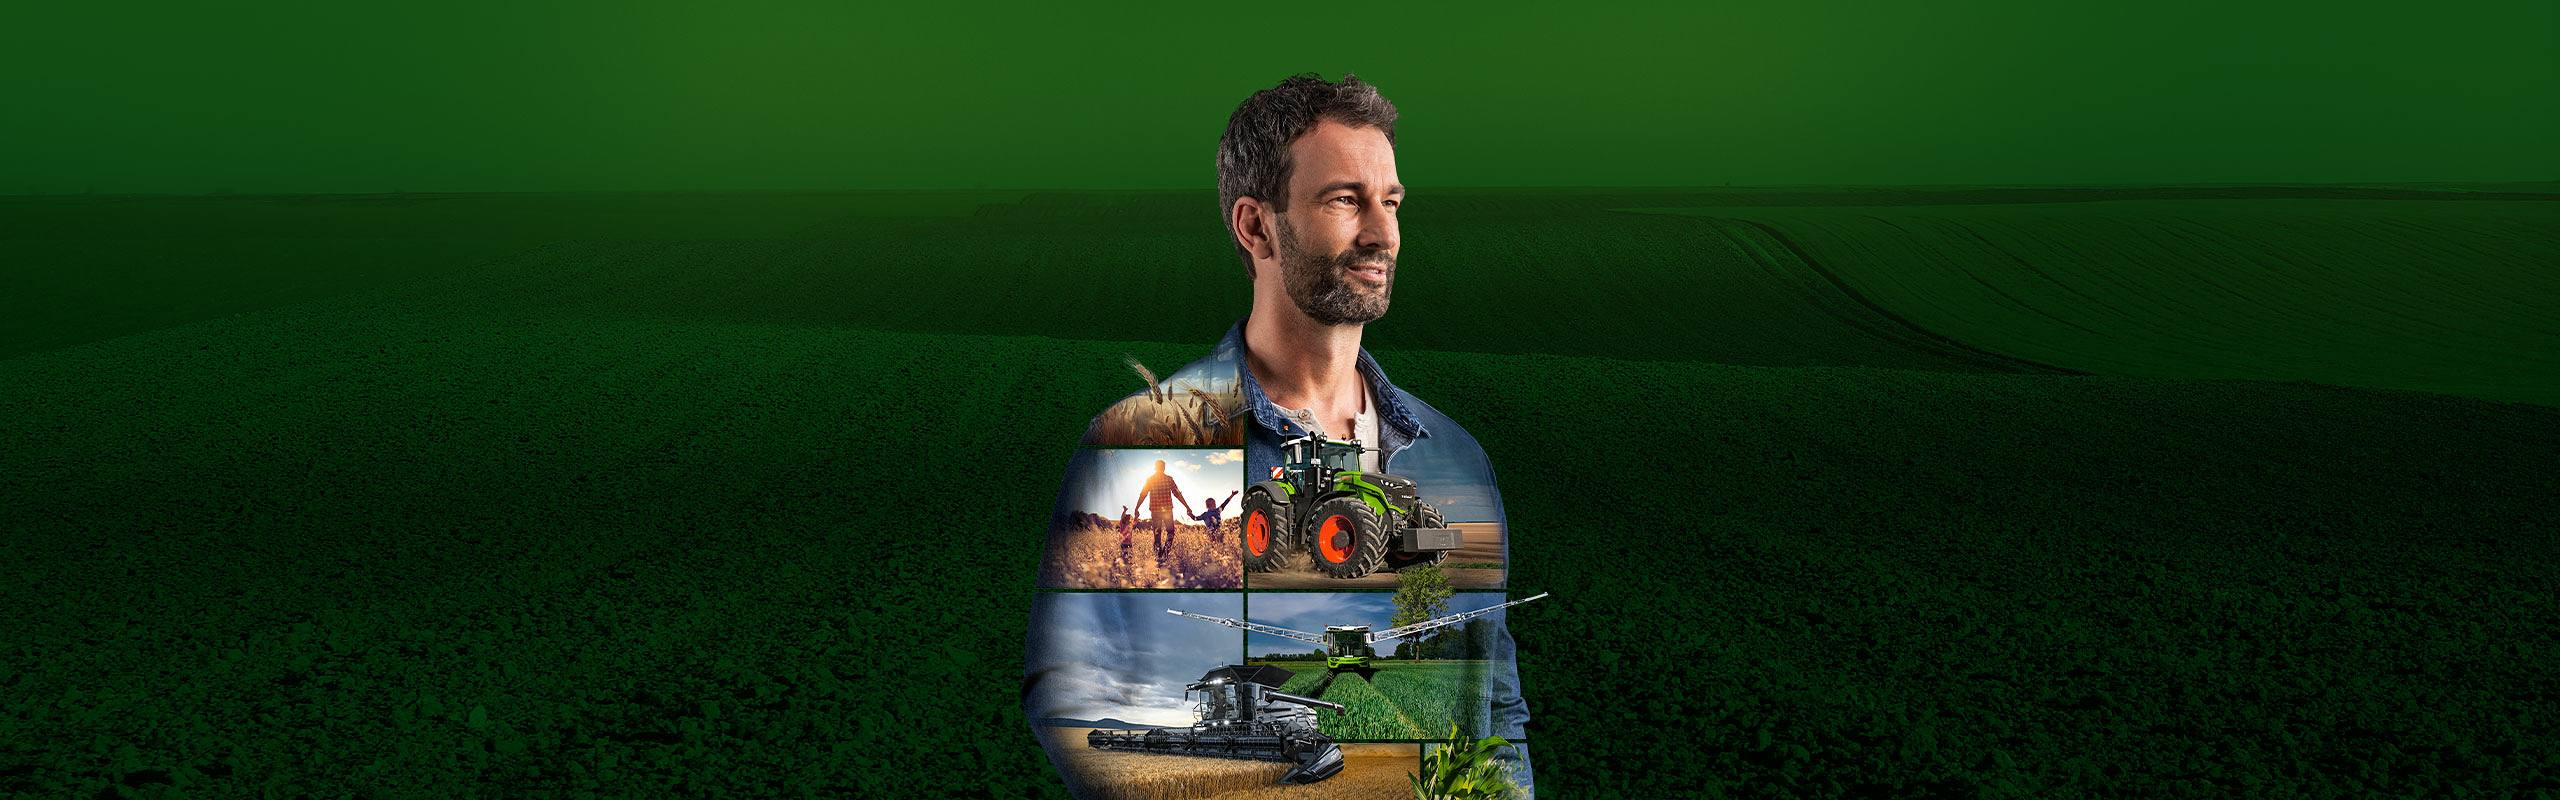 Een landbouwer staat voor een groene achtergrond en kijkt gemotiveerd in de toekomst. Op zijn bovenkant zijn Fendt-producten afgebeeld.